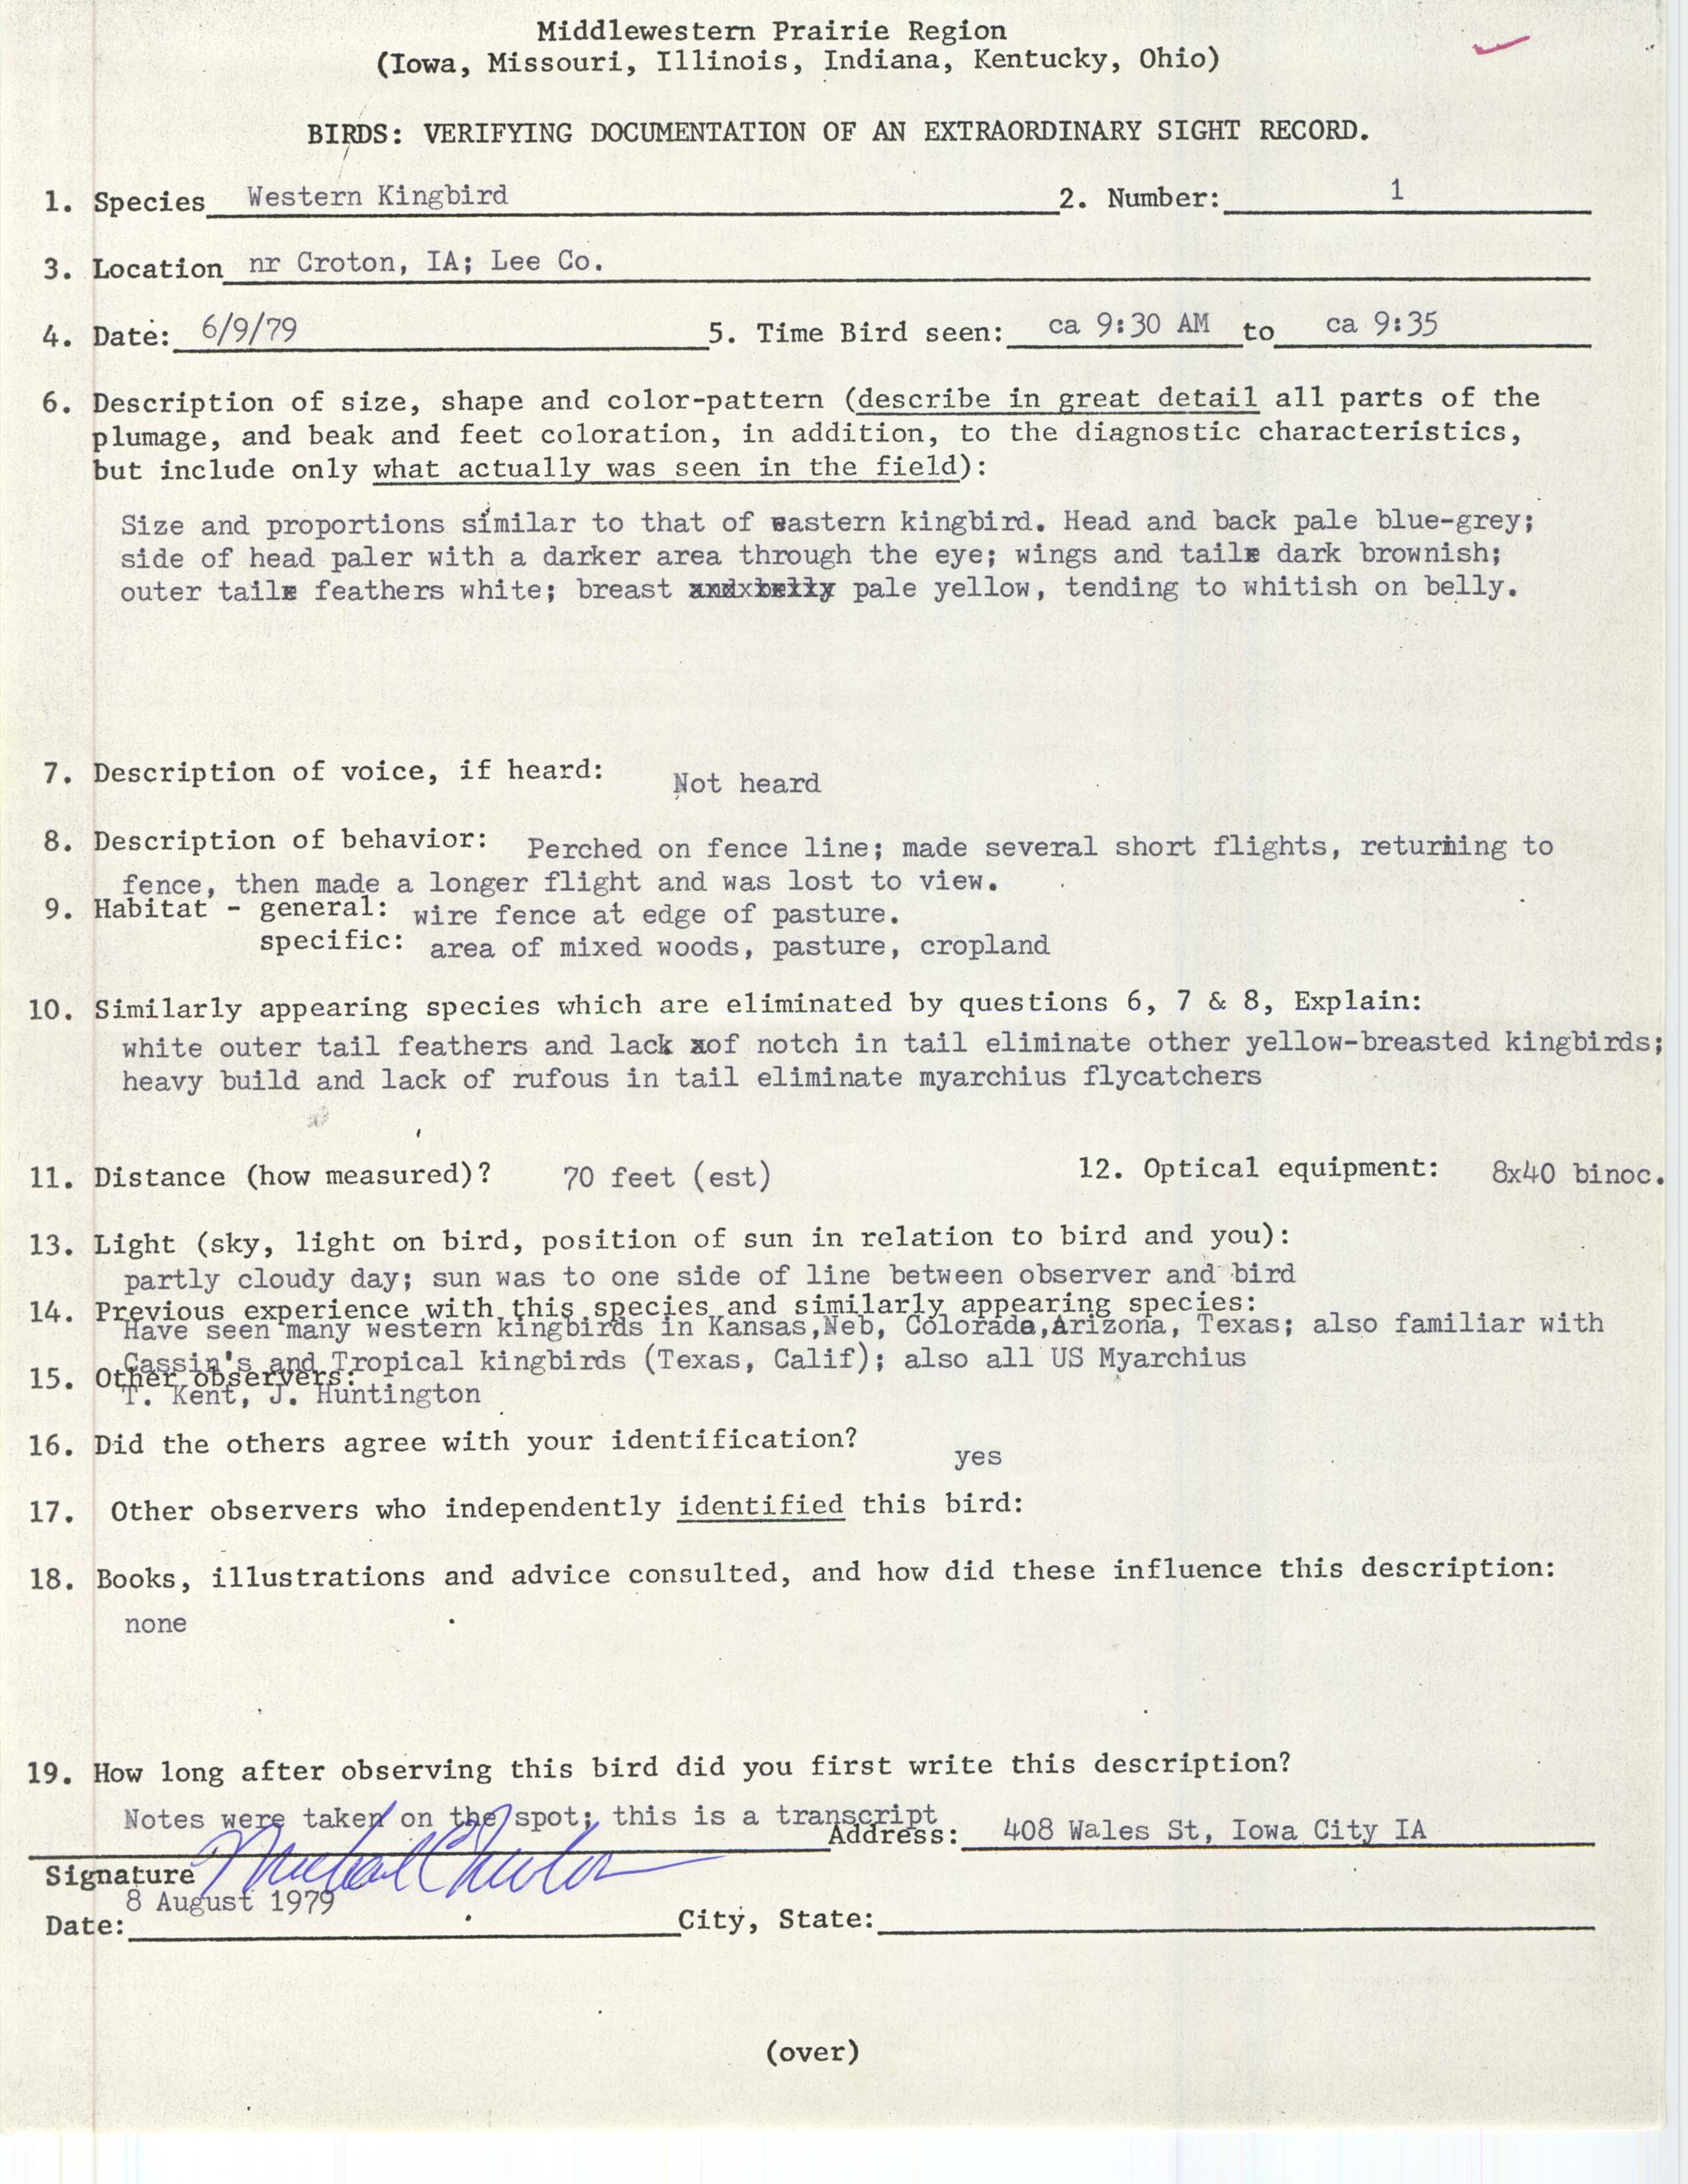 Rare bird documentation form for Western Kingbird near Croton, 1979